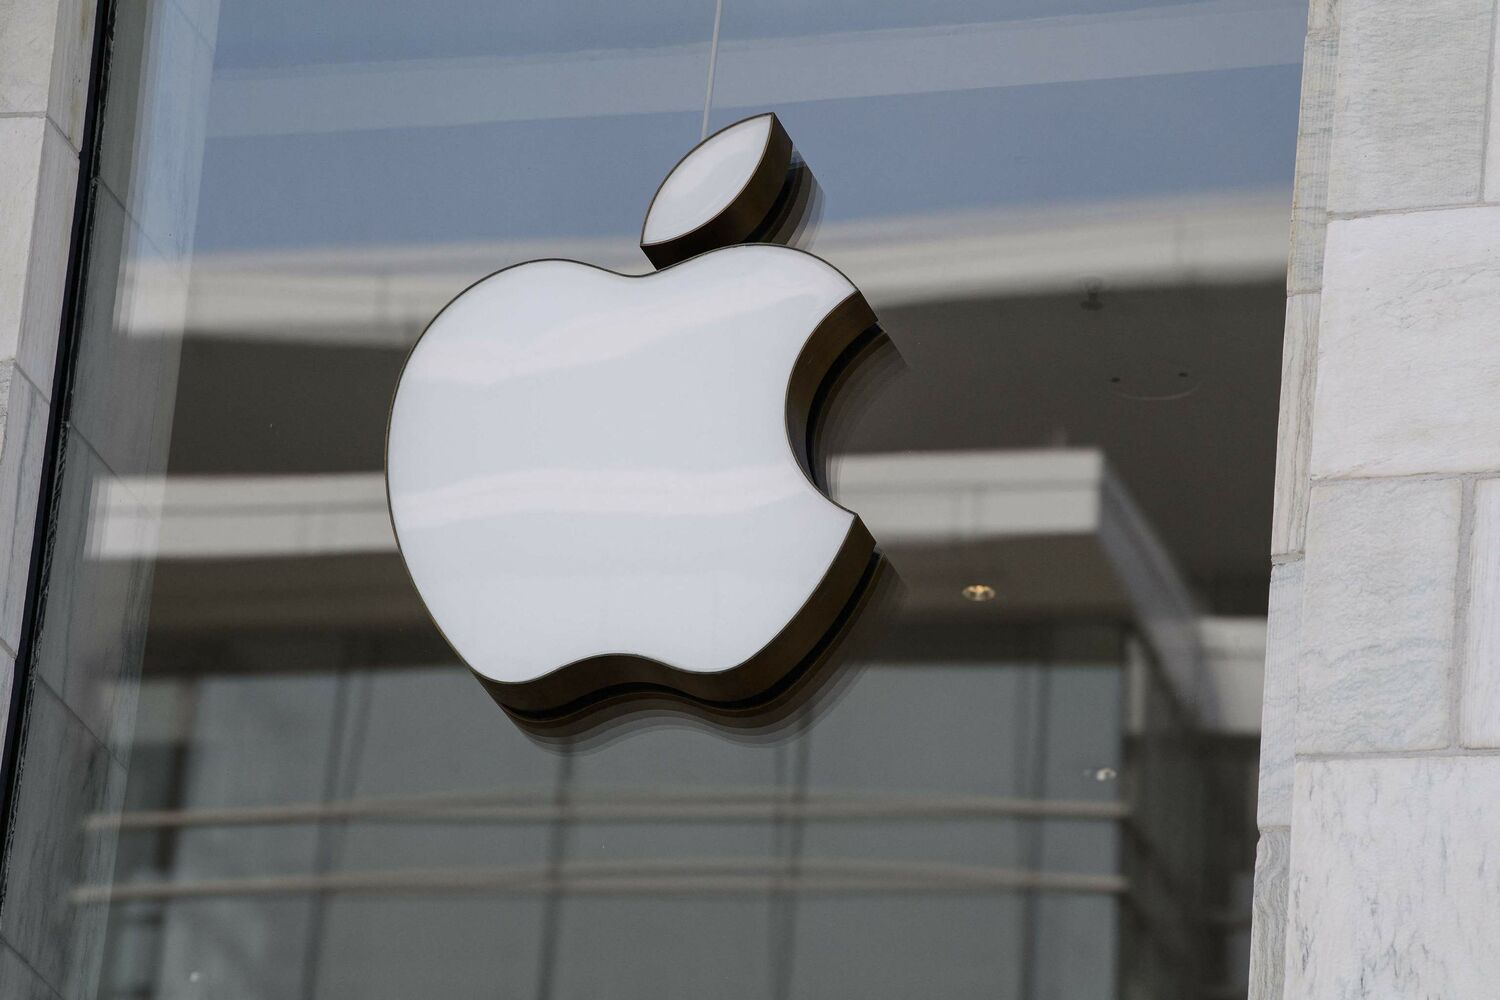 No solo Apple: los gigantes de Wall Street que ganan más de 100.000 millones en Bolsa